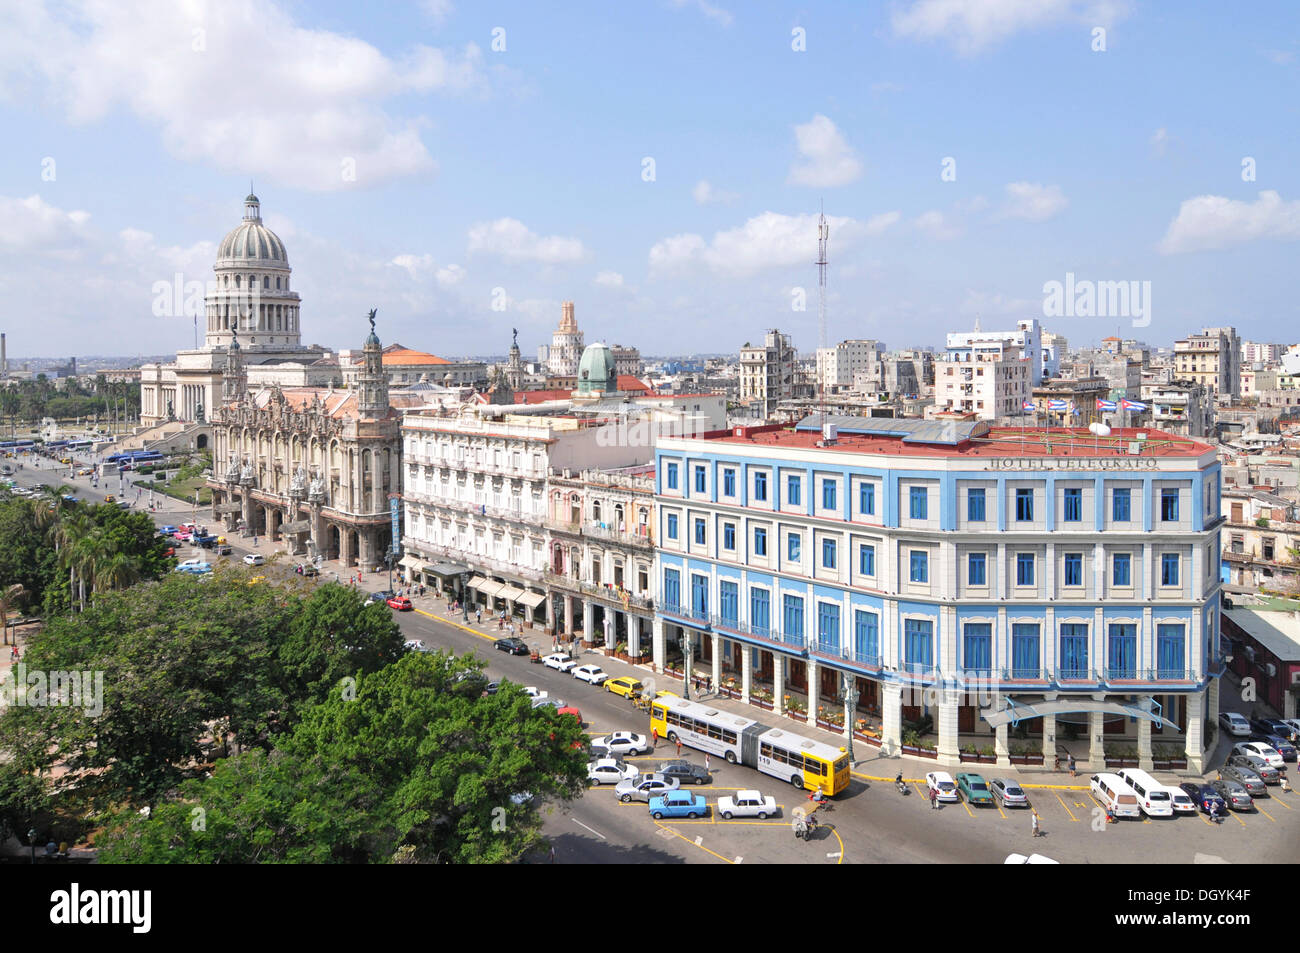 Capitol e opera house, con affaccio sulla piazza centrale Piazza square, città vecchia, Havana, Cuba, dei Caraibi e America centrale Foto Stock